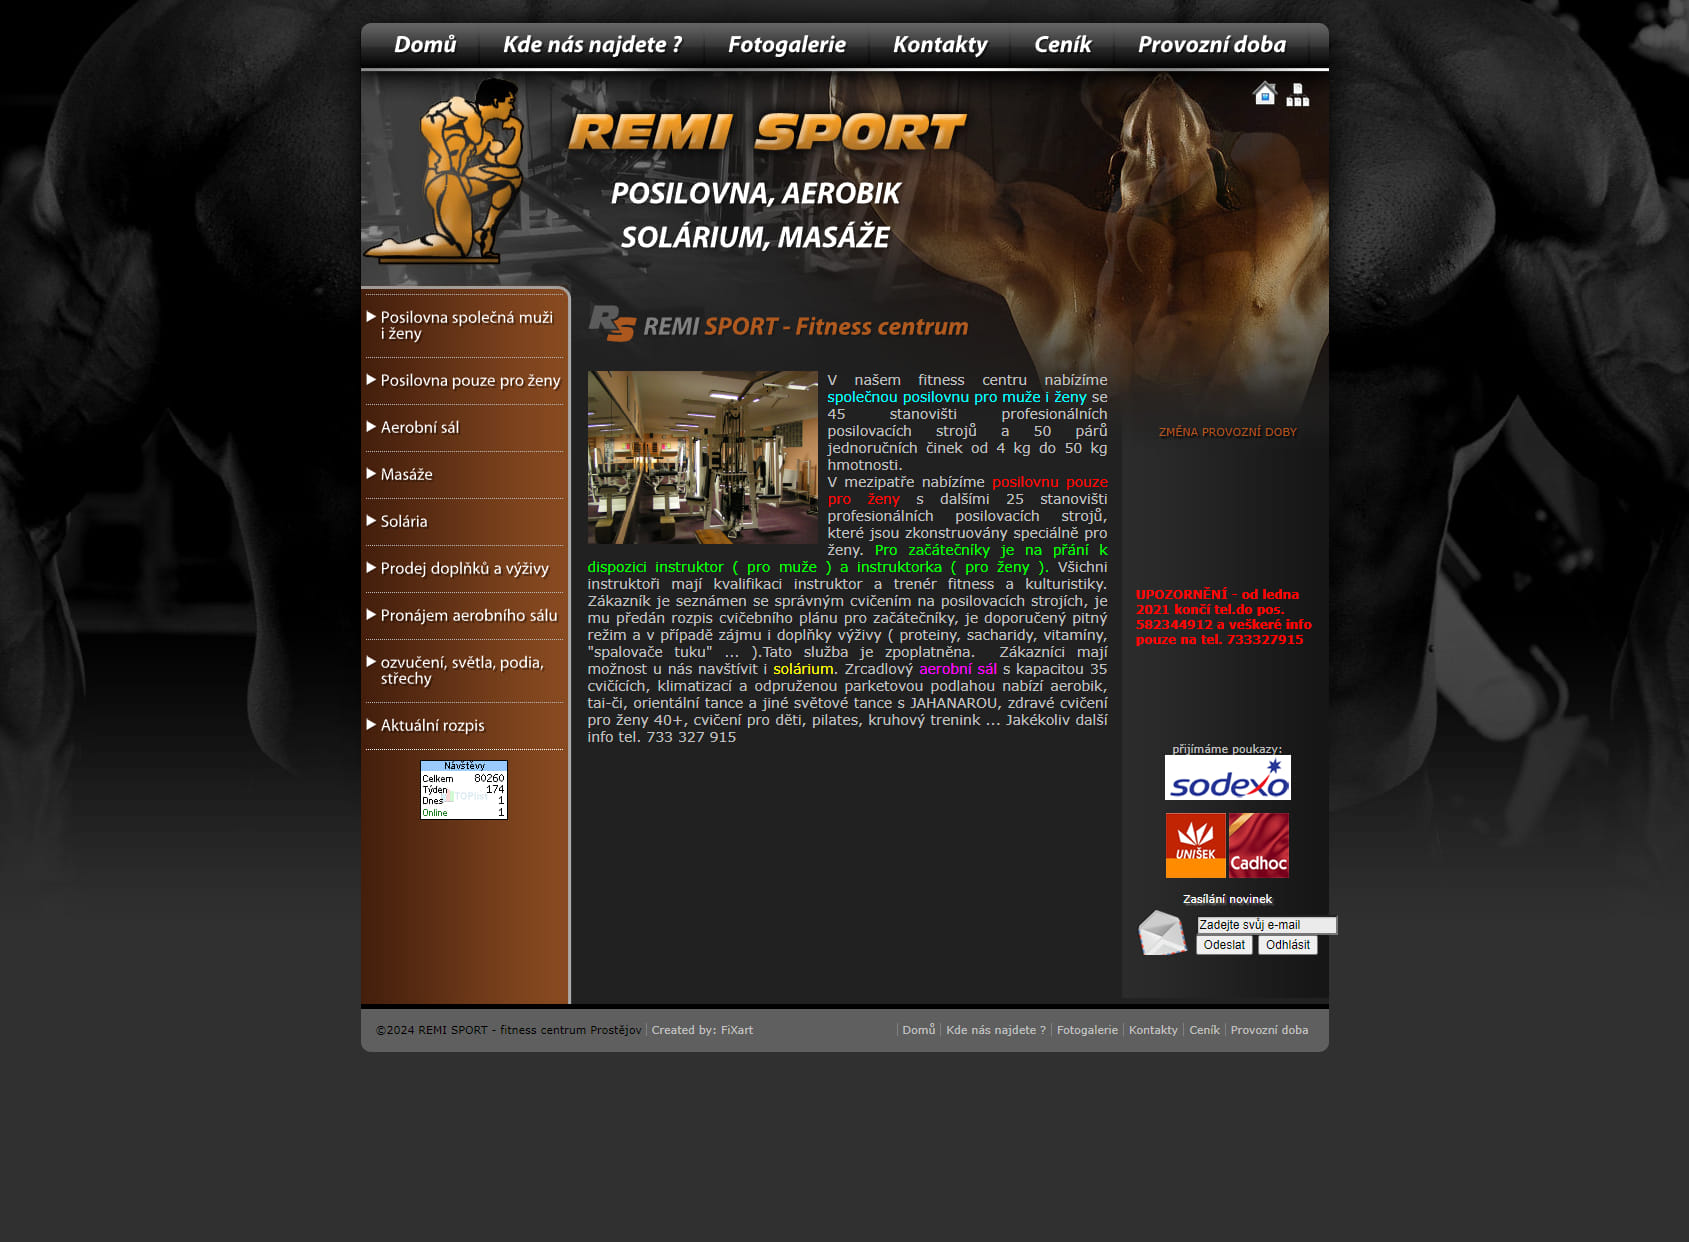 Remi sport